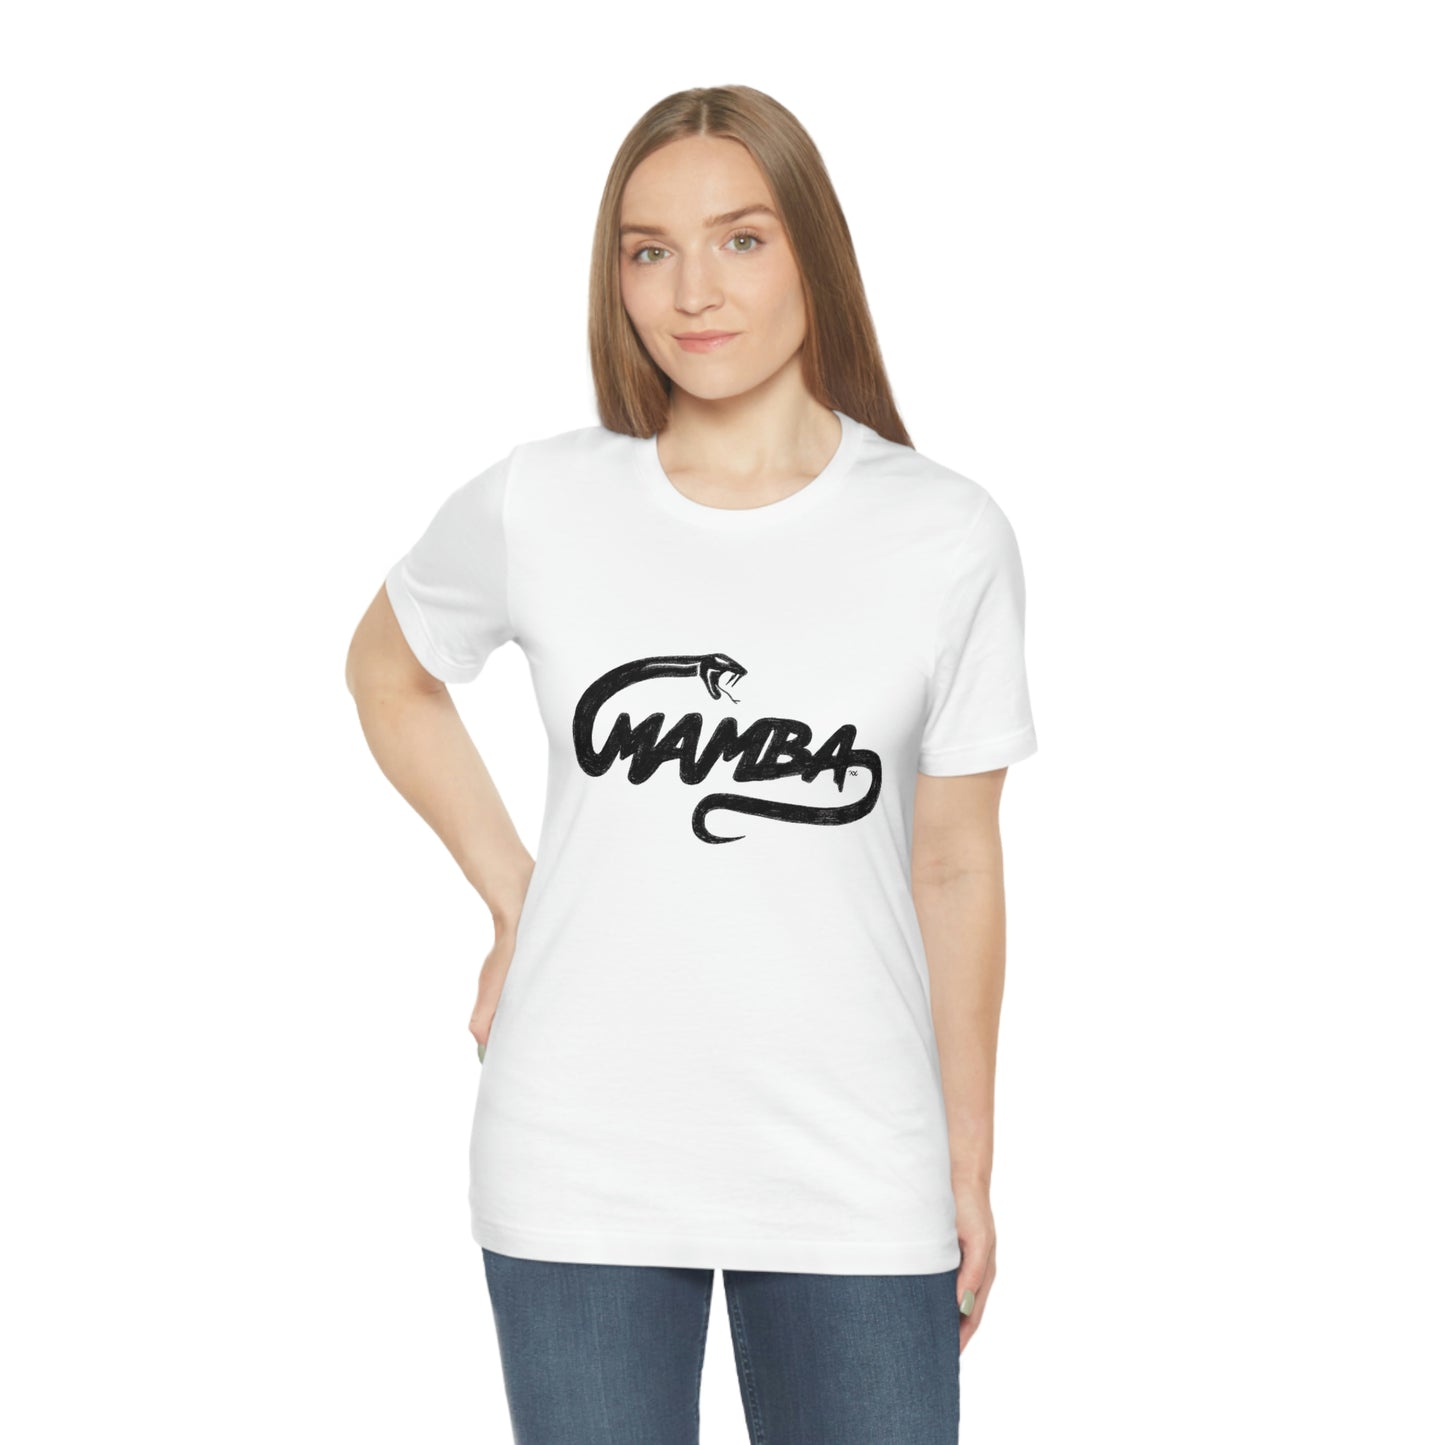 Mamba Unisex T-Shirt